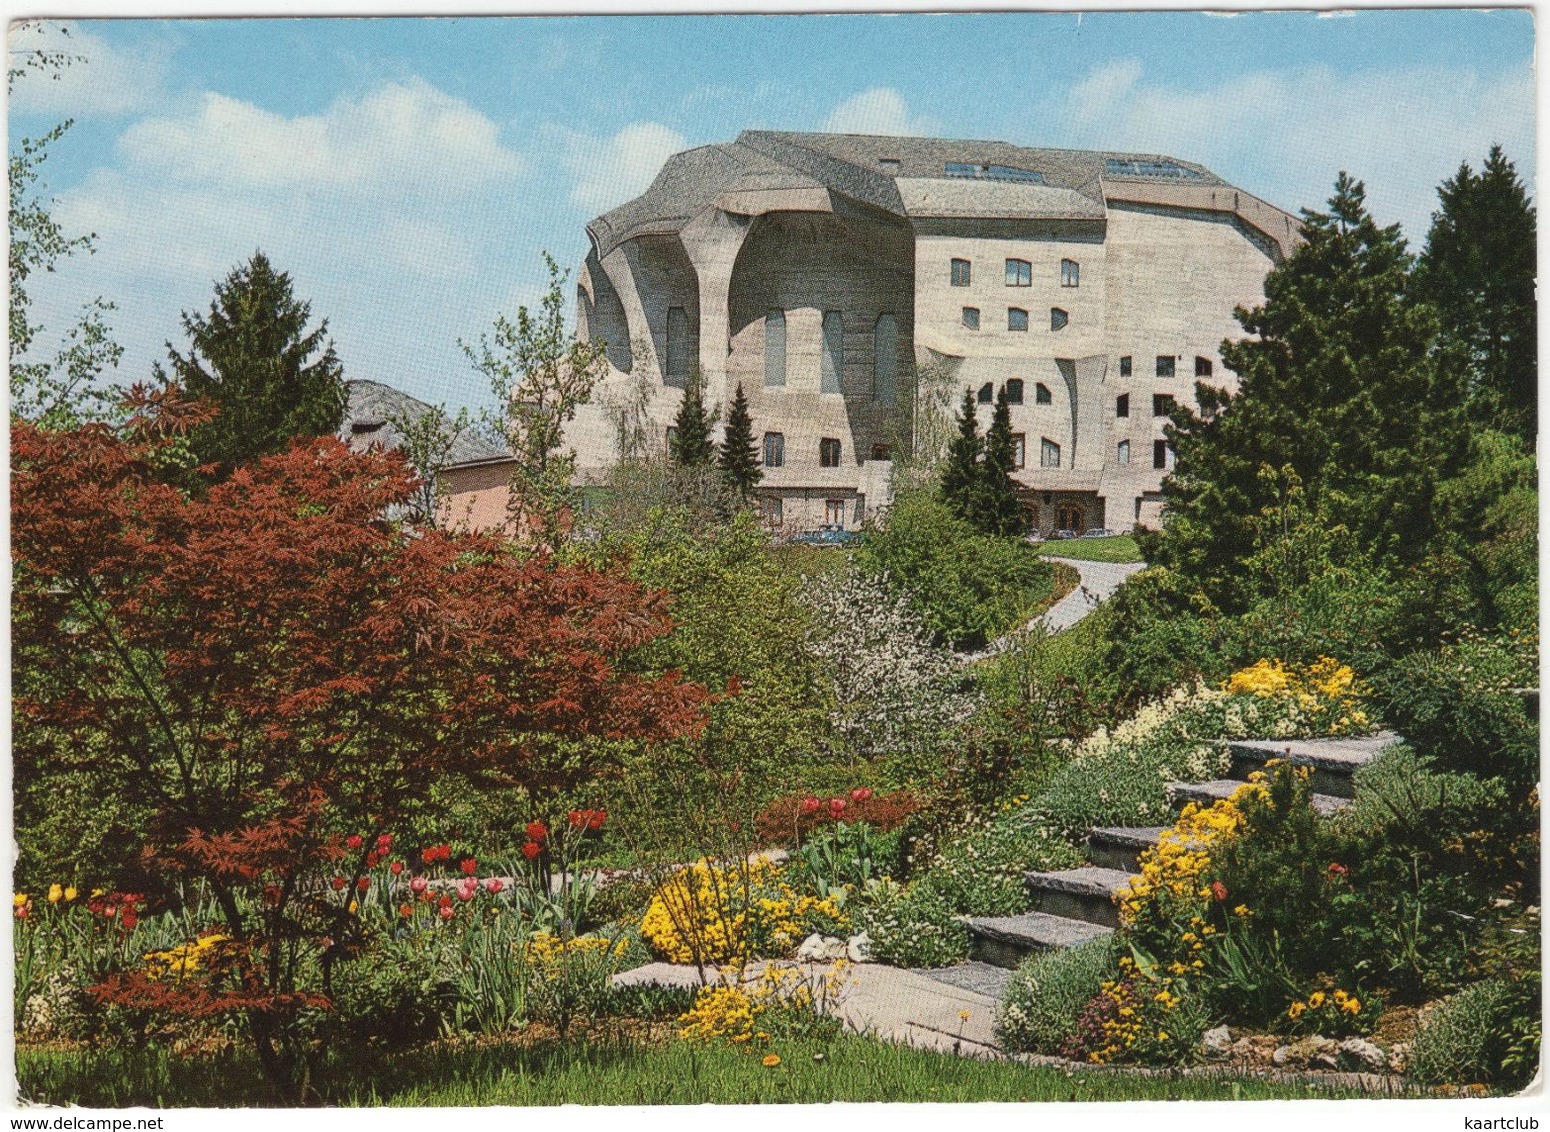 'Goetheanum' - Freie Hochschule Für Geisteswissenschaft In Dornach (Schweiz) - 1970 - Dornach